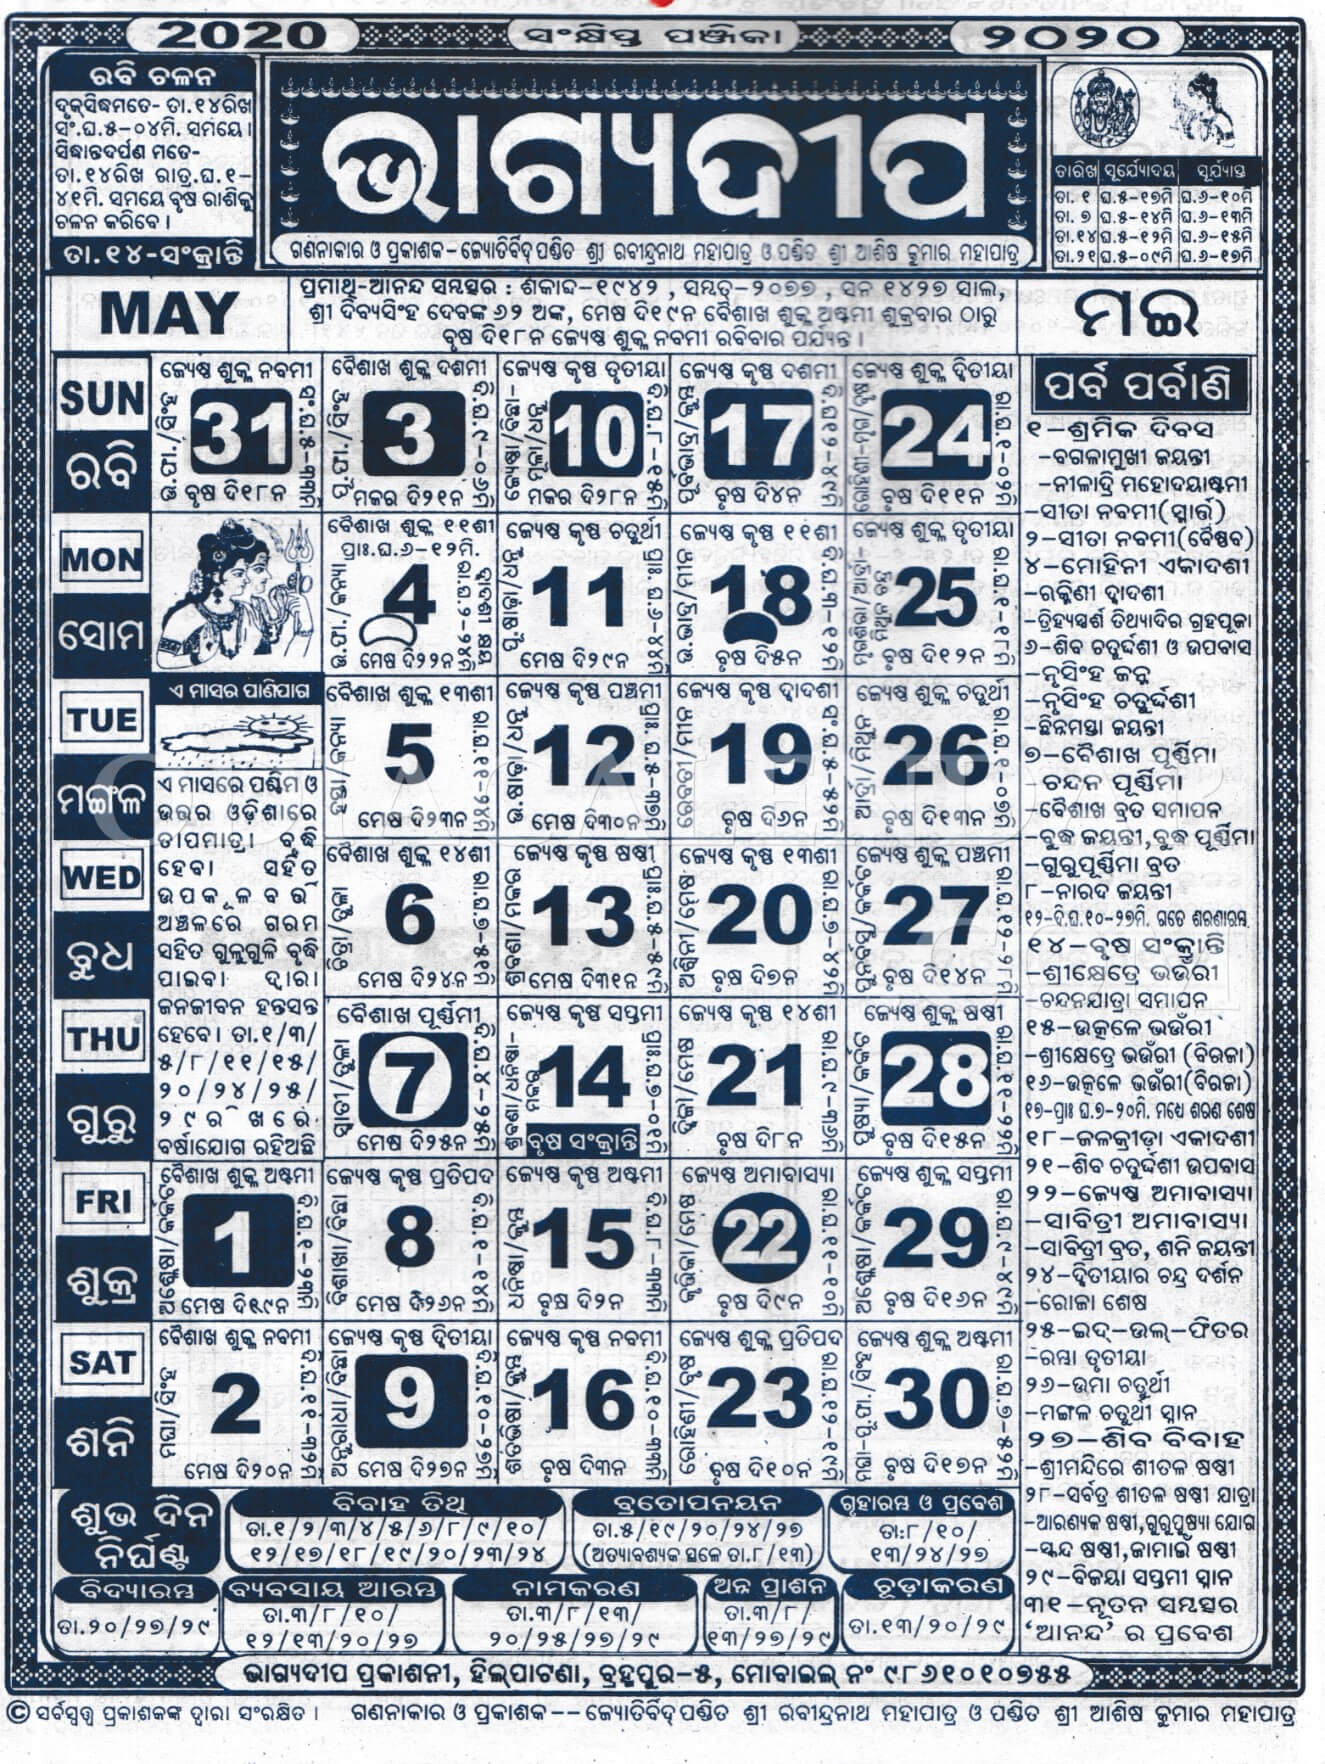 Bhagyadeep Calendar 2020 May